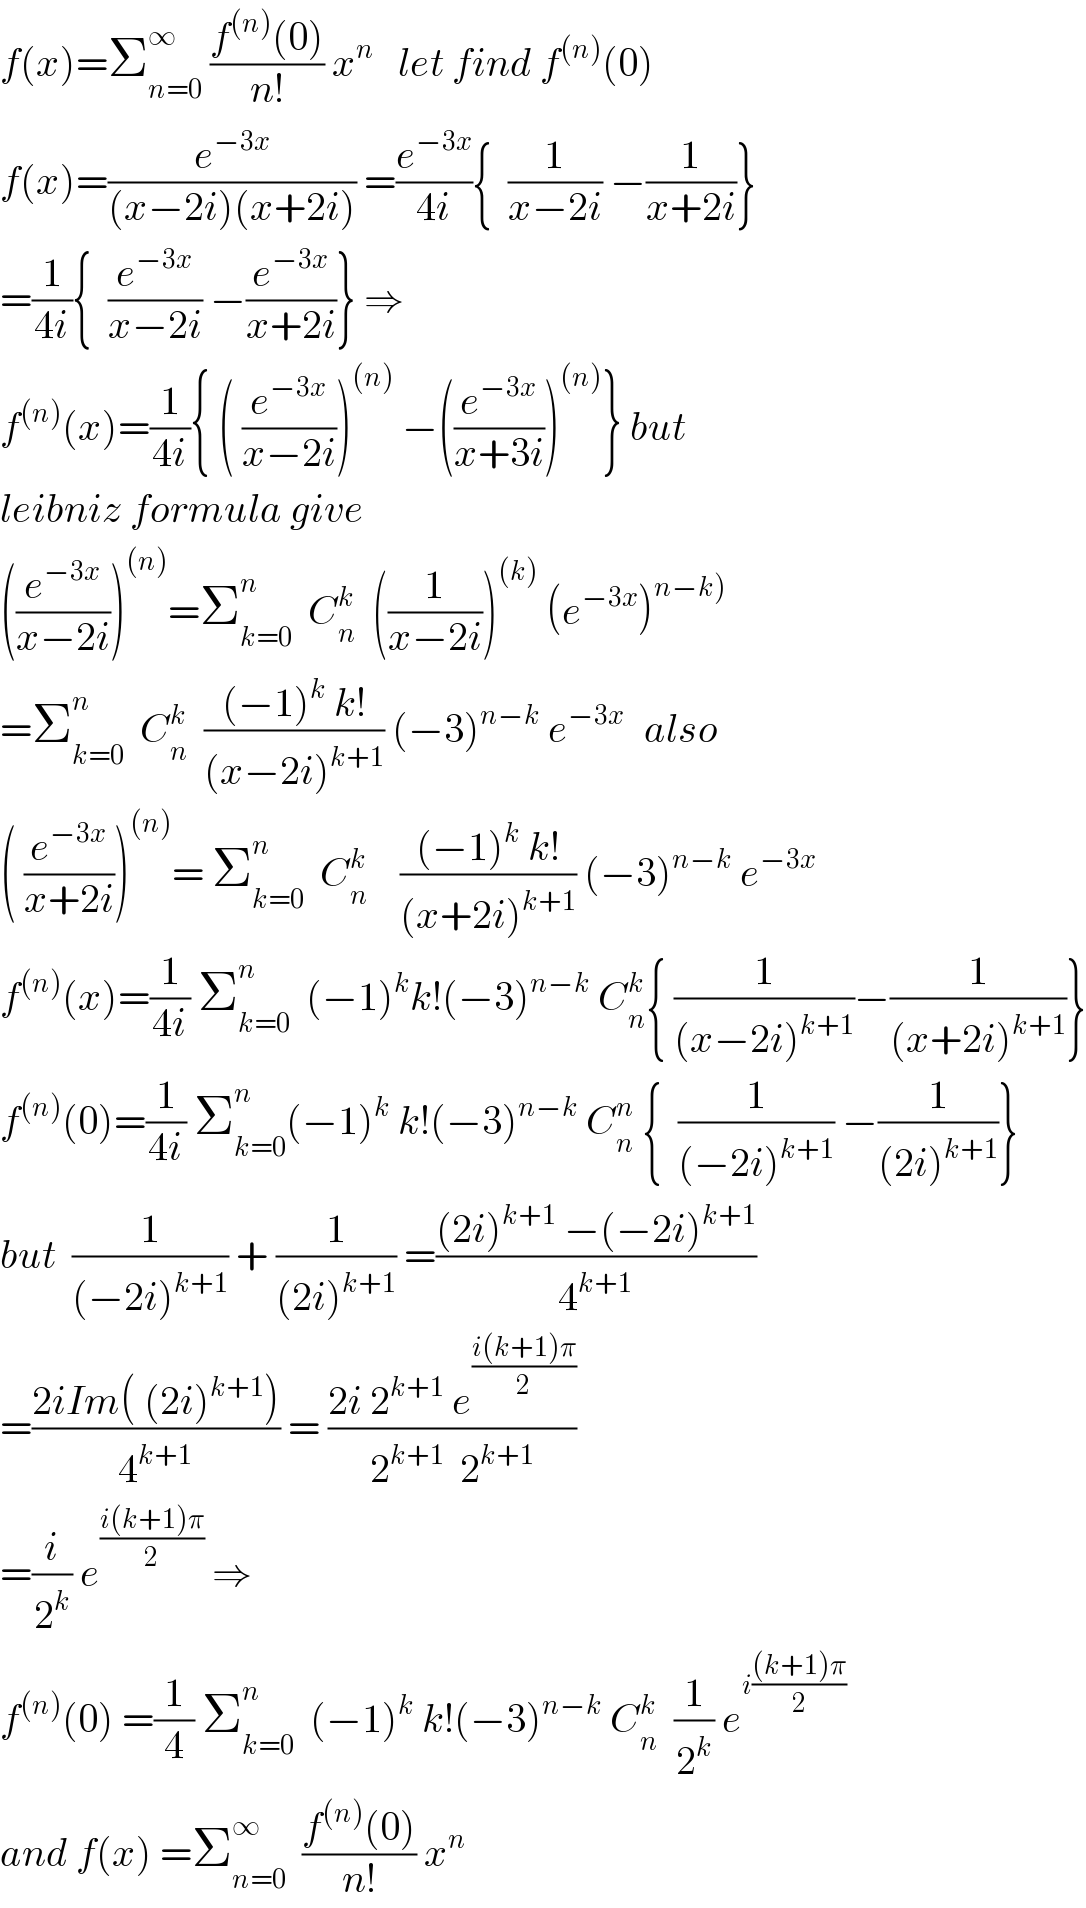 f(x)=Σ_(n=0) ^∞  ((f^((n)) (0))/(n!)) x^n    let find f^((n)) (0)  f(x)=(e^(−3x) /((x−2i)(x+2i))) =(e^(−3x) /(4i)){  (1/(x−2i)) −(1/(x+2i))}  =(1/(4i)){  (e^(−3x) /(x−2i)) −(e^(−3x) /(x+2i))} ⇒  f^((n)) (x)=(1/(4i)){ ( (e^(−3x) /(x−2i)))^((n))  −((e^(−3x) /(x+3i)))^((n)) } but  leibniz formula give  ((e^(−3x) /(x−2i)))^((n)) =Σ_(k=0) ^n   C_n ^k   ((1/(x−2i)))^((k))  (e^(−3x) )^(n−k))   =Σ_(k=0) ^n   C_n ^k   (((−1)^k  k!)/((x−2i)^(k+1) )) (−3)^(n−k)  e^(−3x )   also  ( (e^(−3x) /(x+2i)))^((n)) = Σ_(k=0) ^n   C_n ^k     (((−1)^k  k!)/((x+2i)^(k+1) )) (−3)^(n−k)  e^(−3x)   f^((n)) (x)=(1/(4i)) Σ_(k=0) ^n   (−1)^k k!(−3)^(n−k)  C_n ^k { (1/((x−2i)^(k+1) ))−(1/((x+2i)^(k+1) ))}  f^((n)) (0)=(1/(4i)) Σ_(k=0) ^n (−1)^k  k!(−3)^(n−k)  C_n ^n  {  (1/((−2i)^(k+1) )) −(1/((2i)^(k+1) ))}  but  (1/((−2i)^(k+1) )) + (1/((2i)^(k+1) )) =(((2i)^(k+1)  −(−2i)^(k+1) )/4^(k+1) )  =((2iIm( (2i)^(k+1) ))/4^(k+1) ) = ((2i 2^(k+1)  e^((i(k+1)π)/2) )/(2^(k+1)   2^(k+1) ))  =(i/2^k ) e^((i(k+1)π)/2)  ⇒  f^((n)) (0) =(1/4) Σ_(k=0) ^n   (−1)^k  k!(−3)^(n−k)  C_n ^k   (1/2^k ) e^(i(((k+1)π)/2))   and f(x) =Σ_(n=0) ^∞   ((f^((n)) (0))/(n!)) x^n   